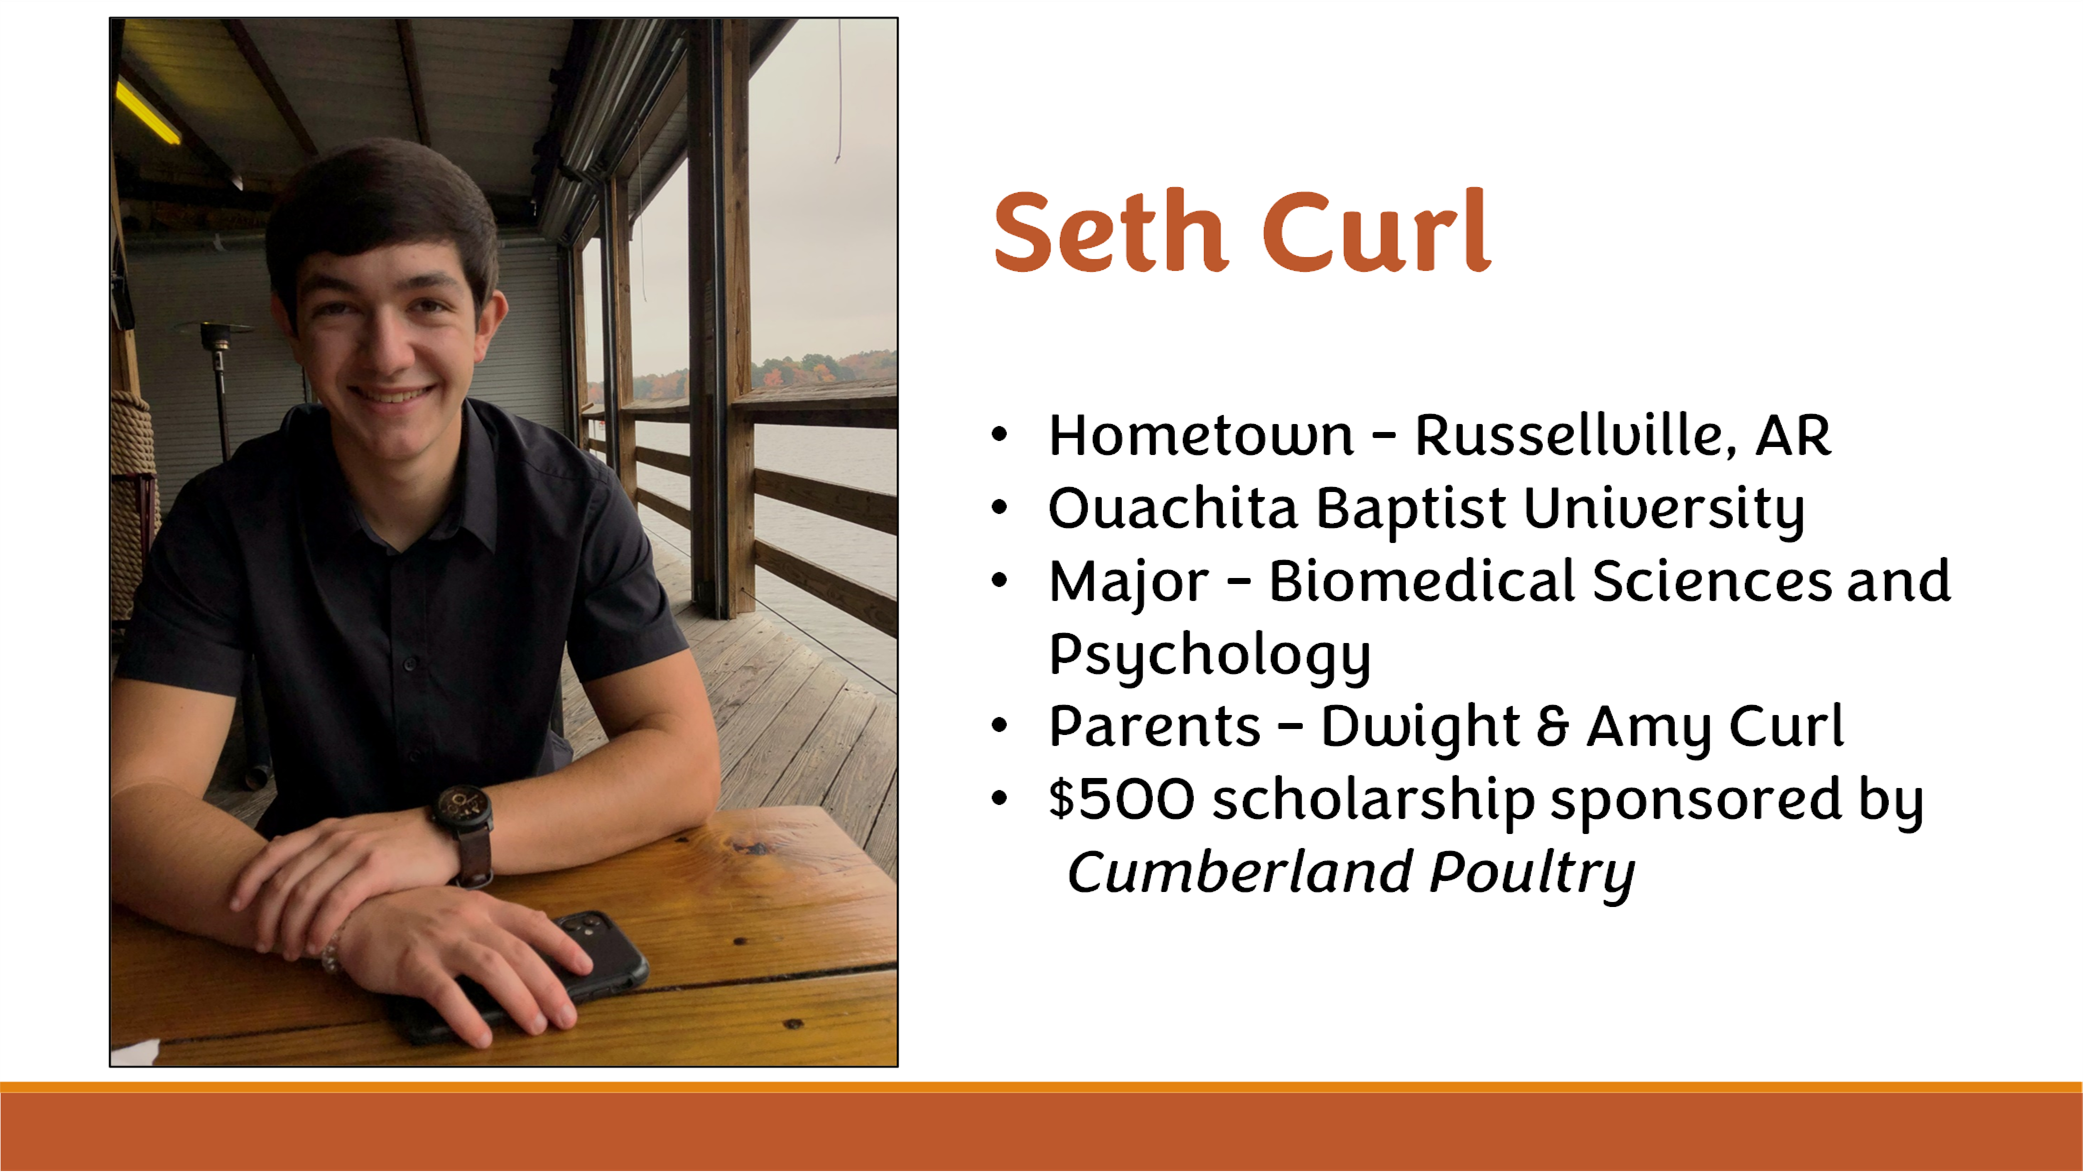 Seth Curl